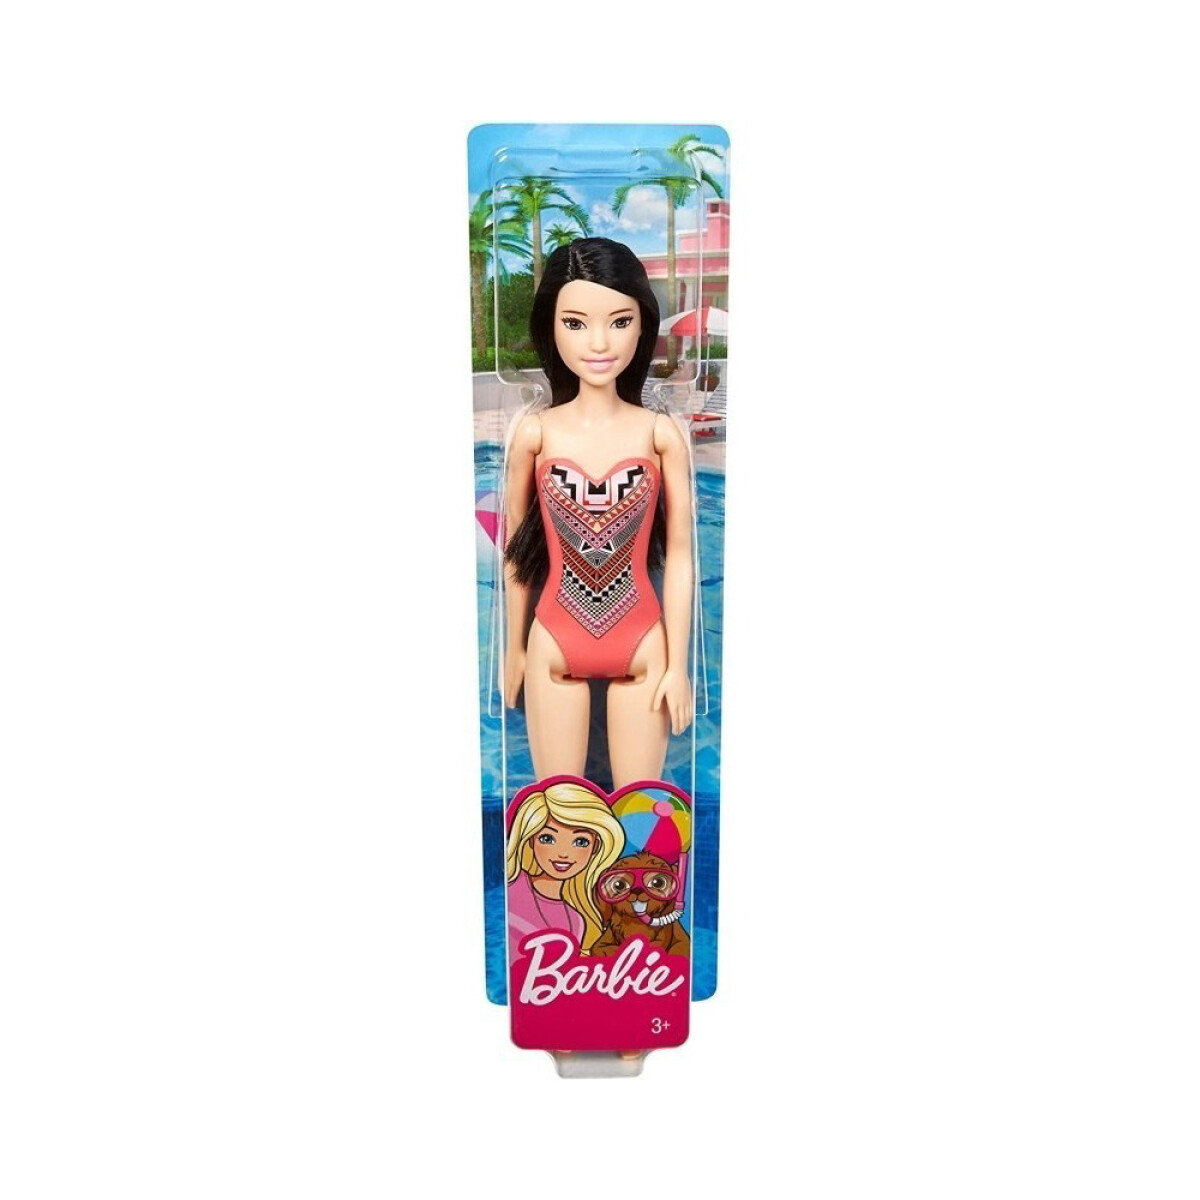 Barbie - Surtido Playa Dwj99 